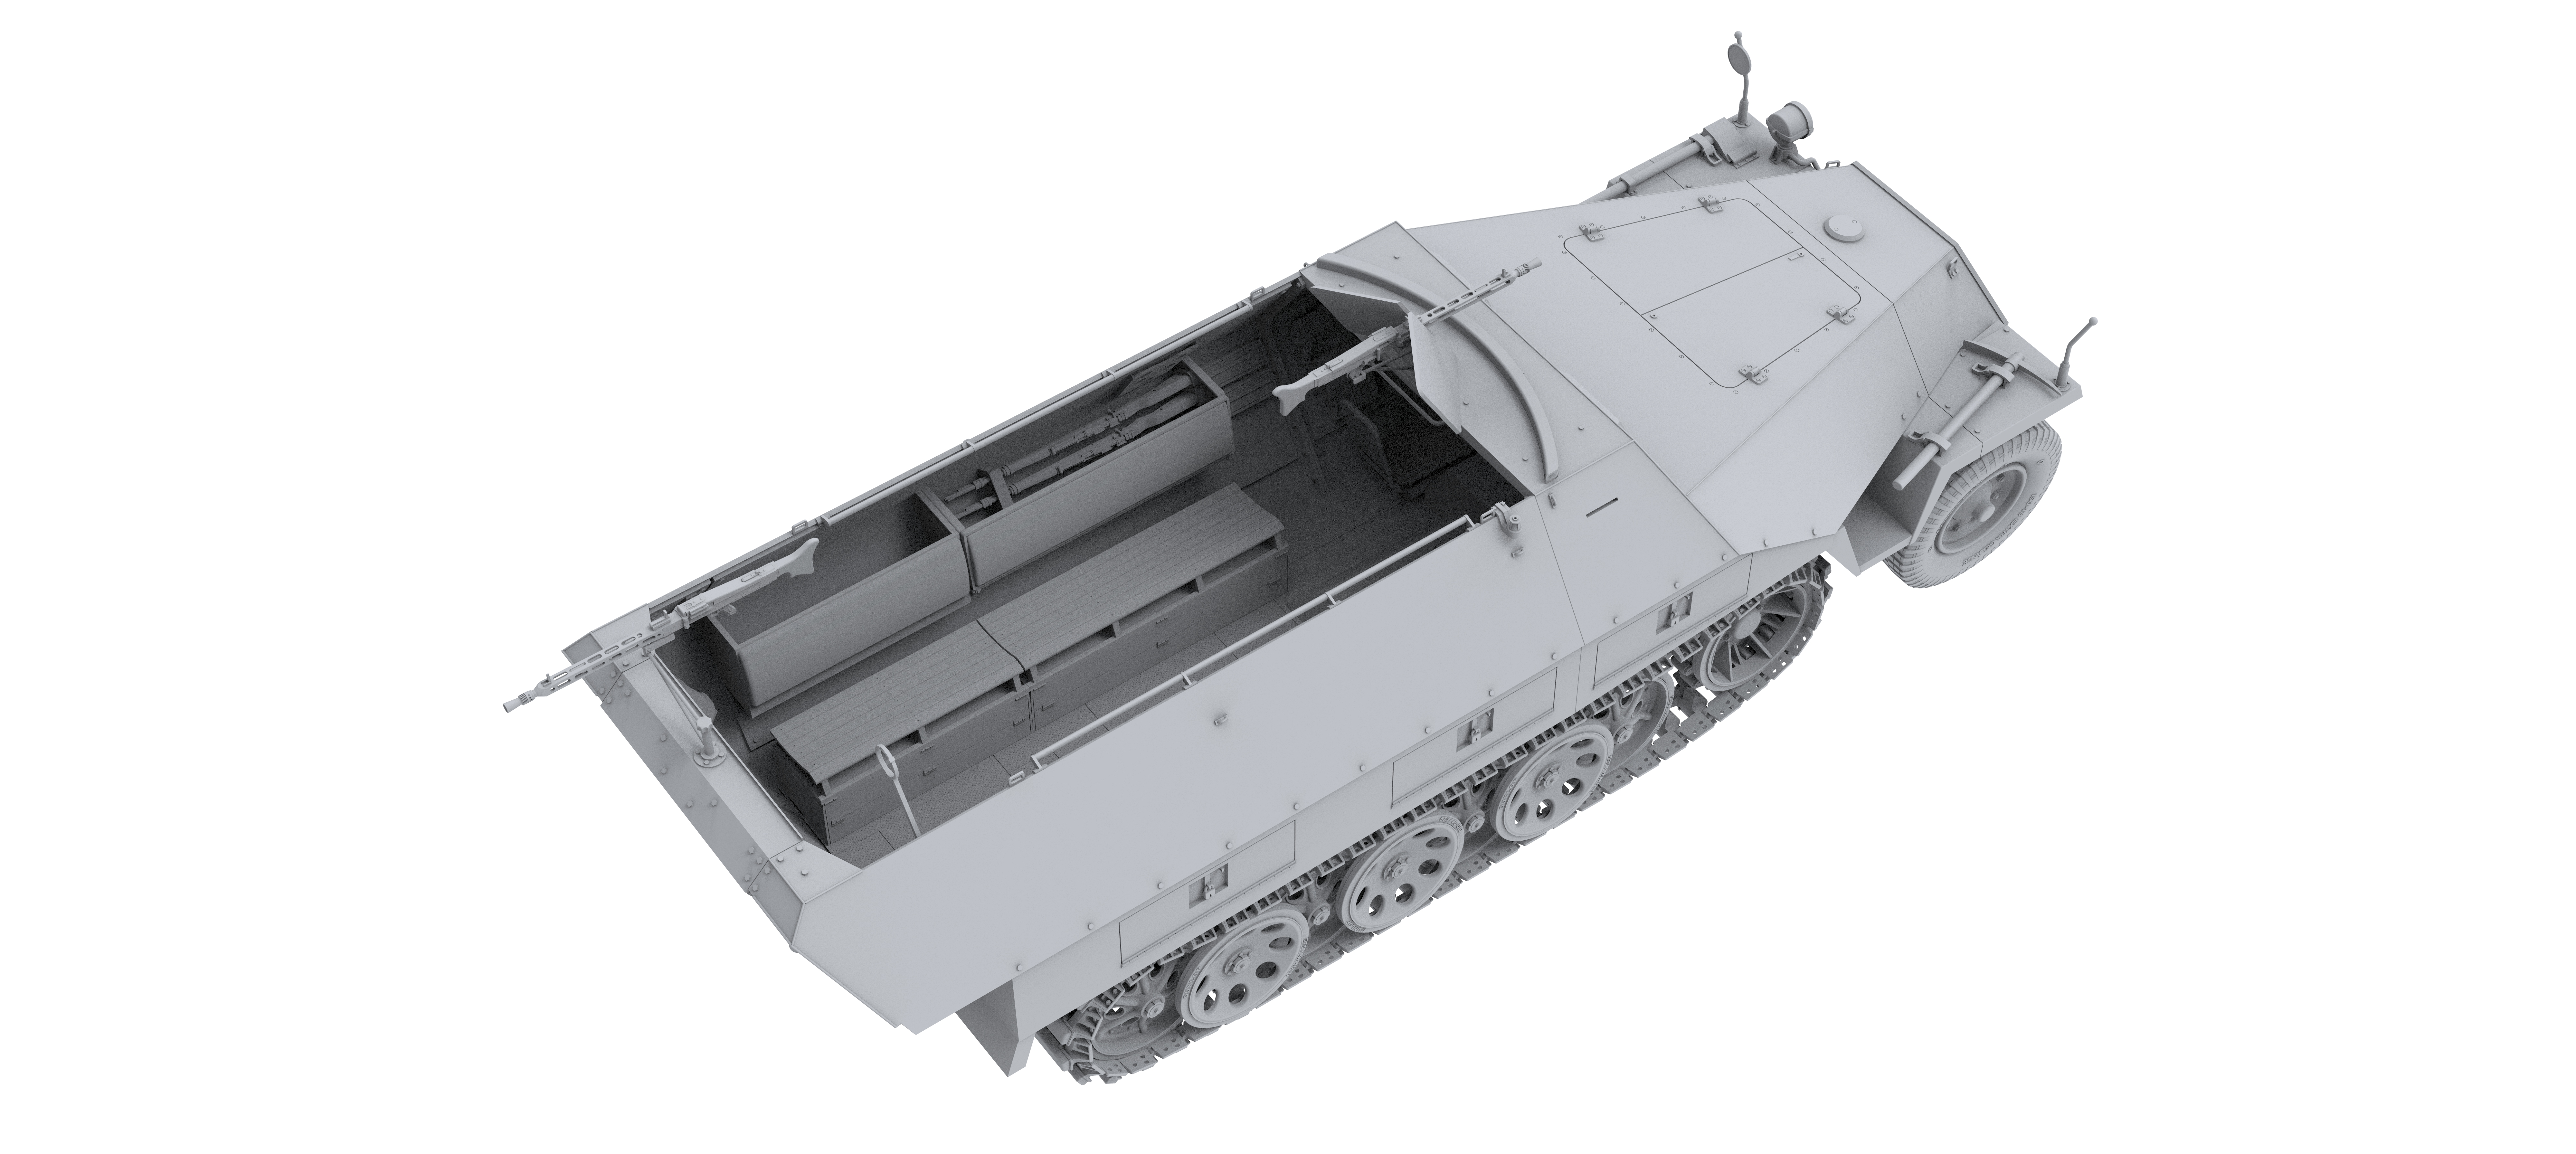 Sd.Kfz.251/1 Ausf.D (1:16)